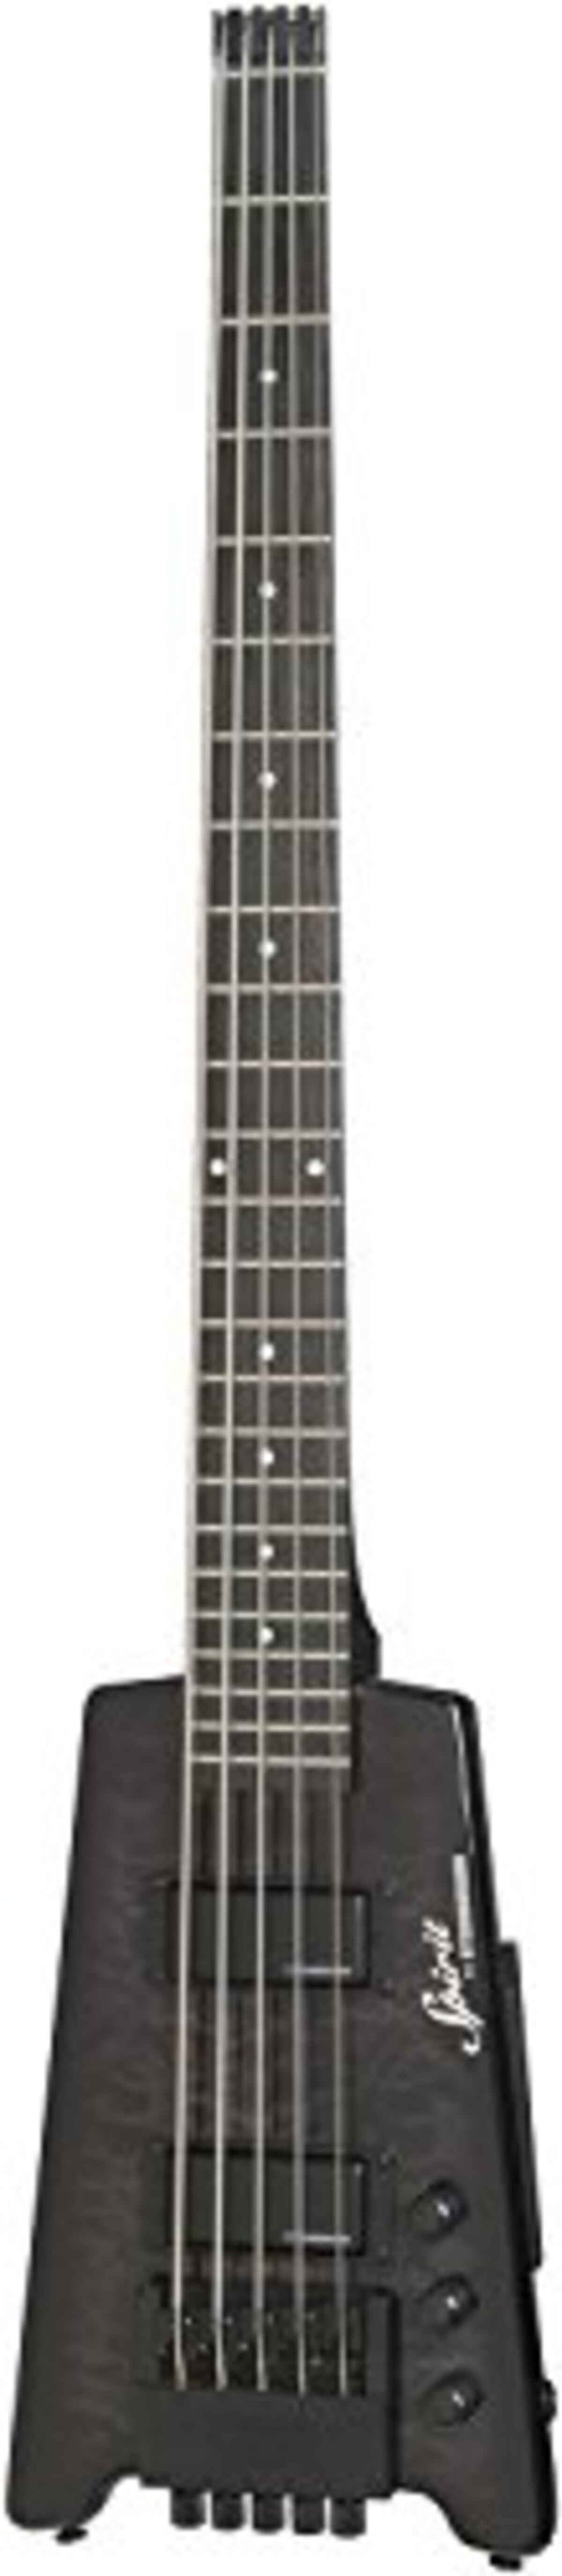 STEINBERGER Spirit XT-25 “Quilt Top” STANDARD 5-strings Bass